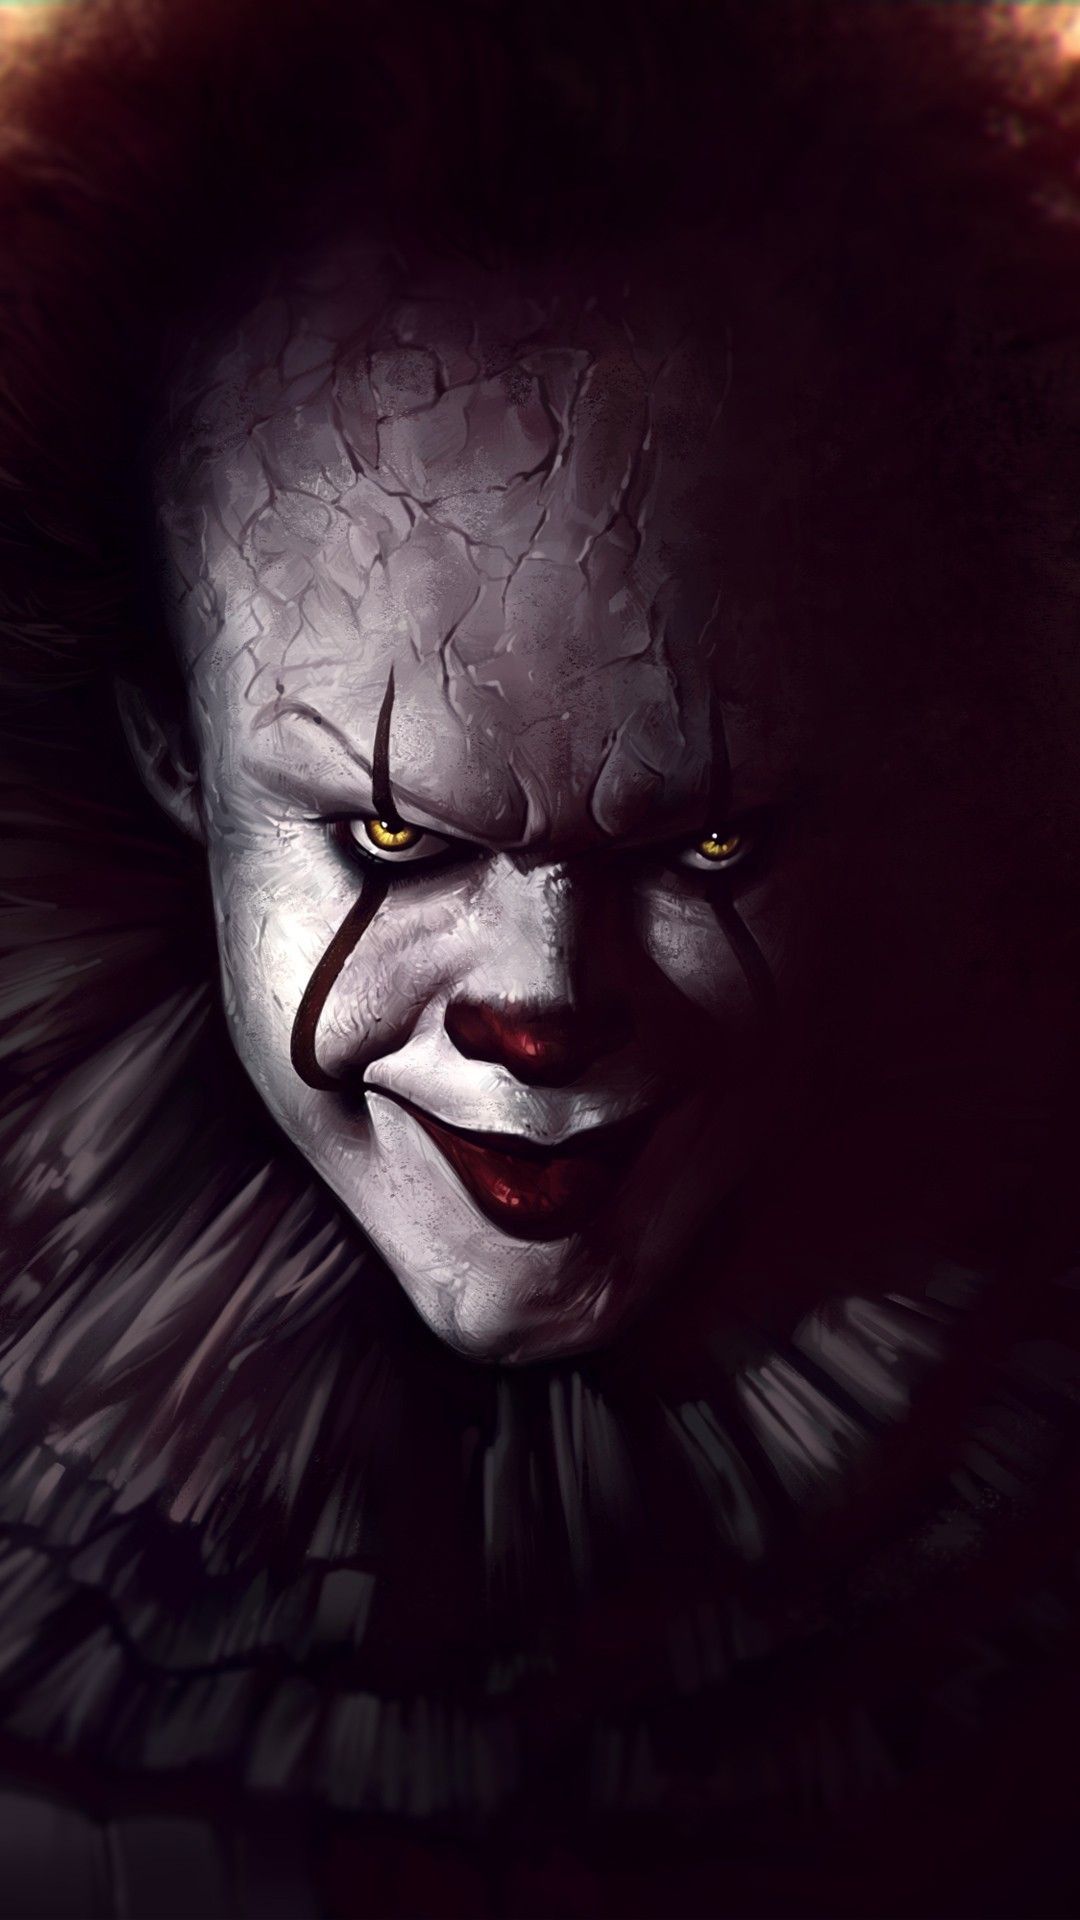 Horror Joker - 1080x1920 Wallpaper 